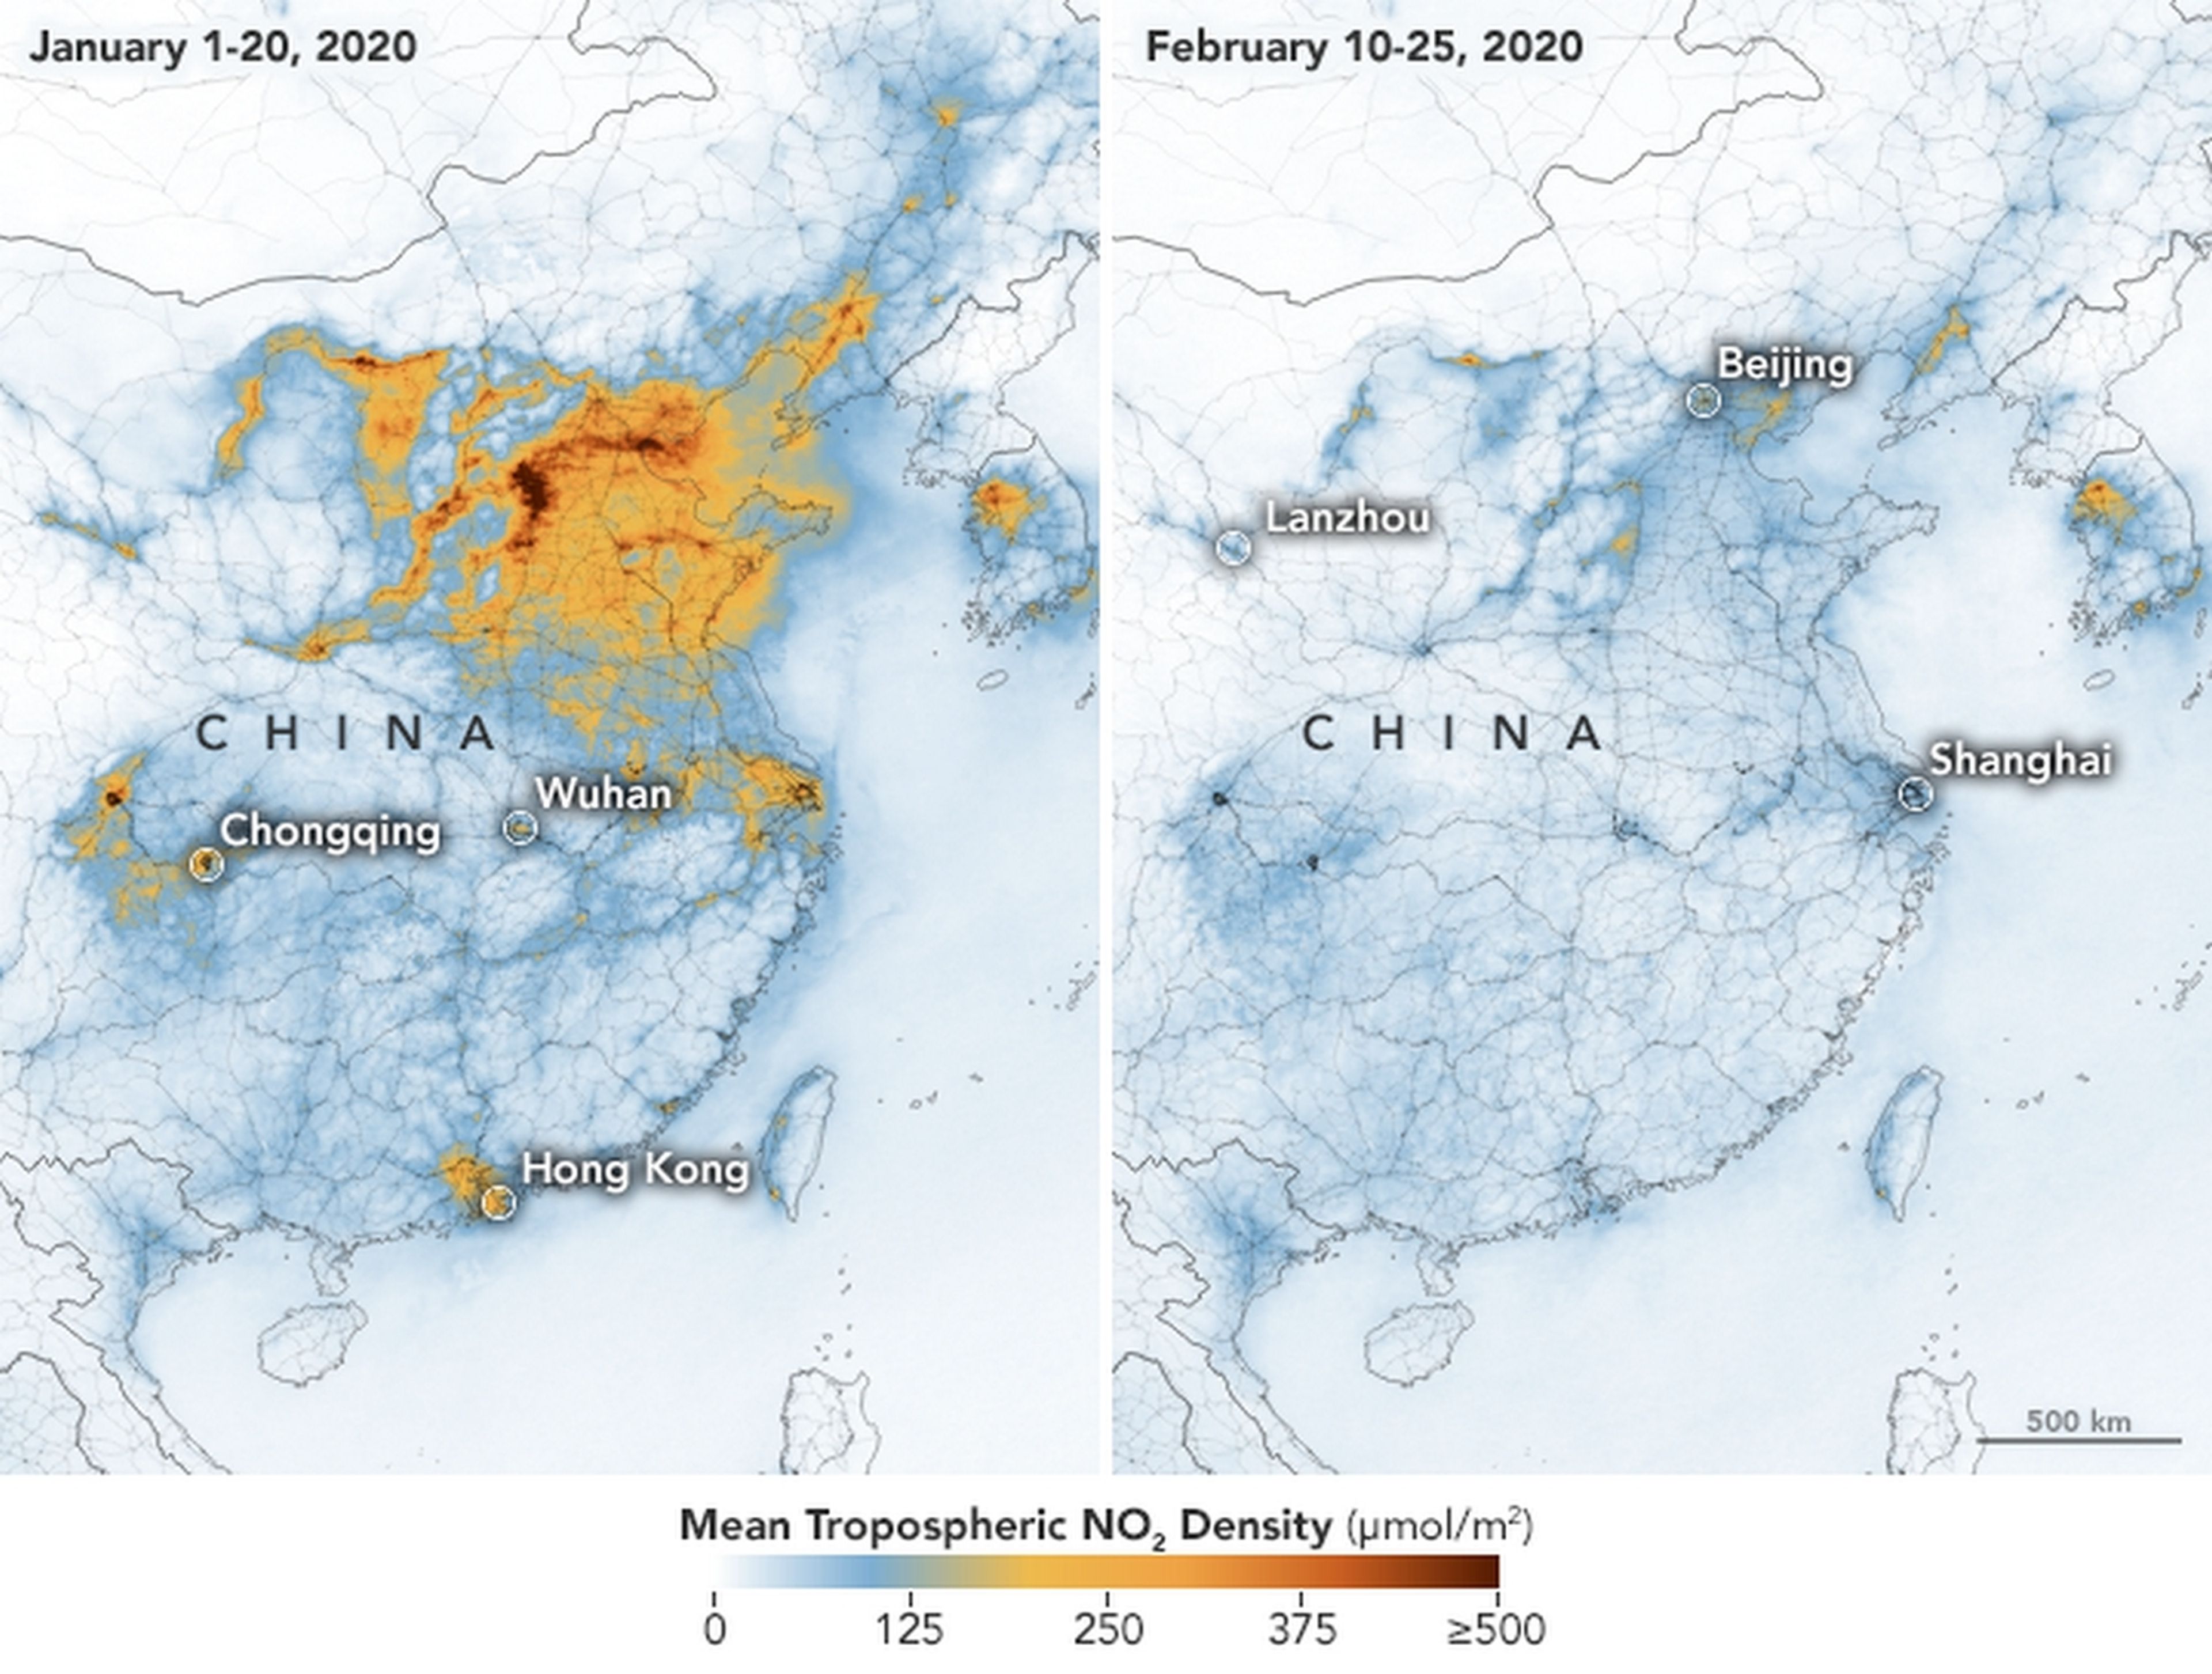 Los índices de contaminación han caído en picado en China debido al coronavirus